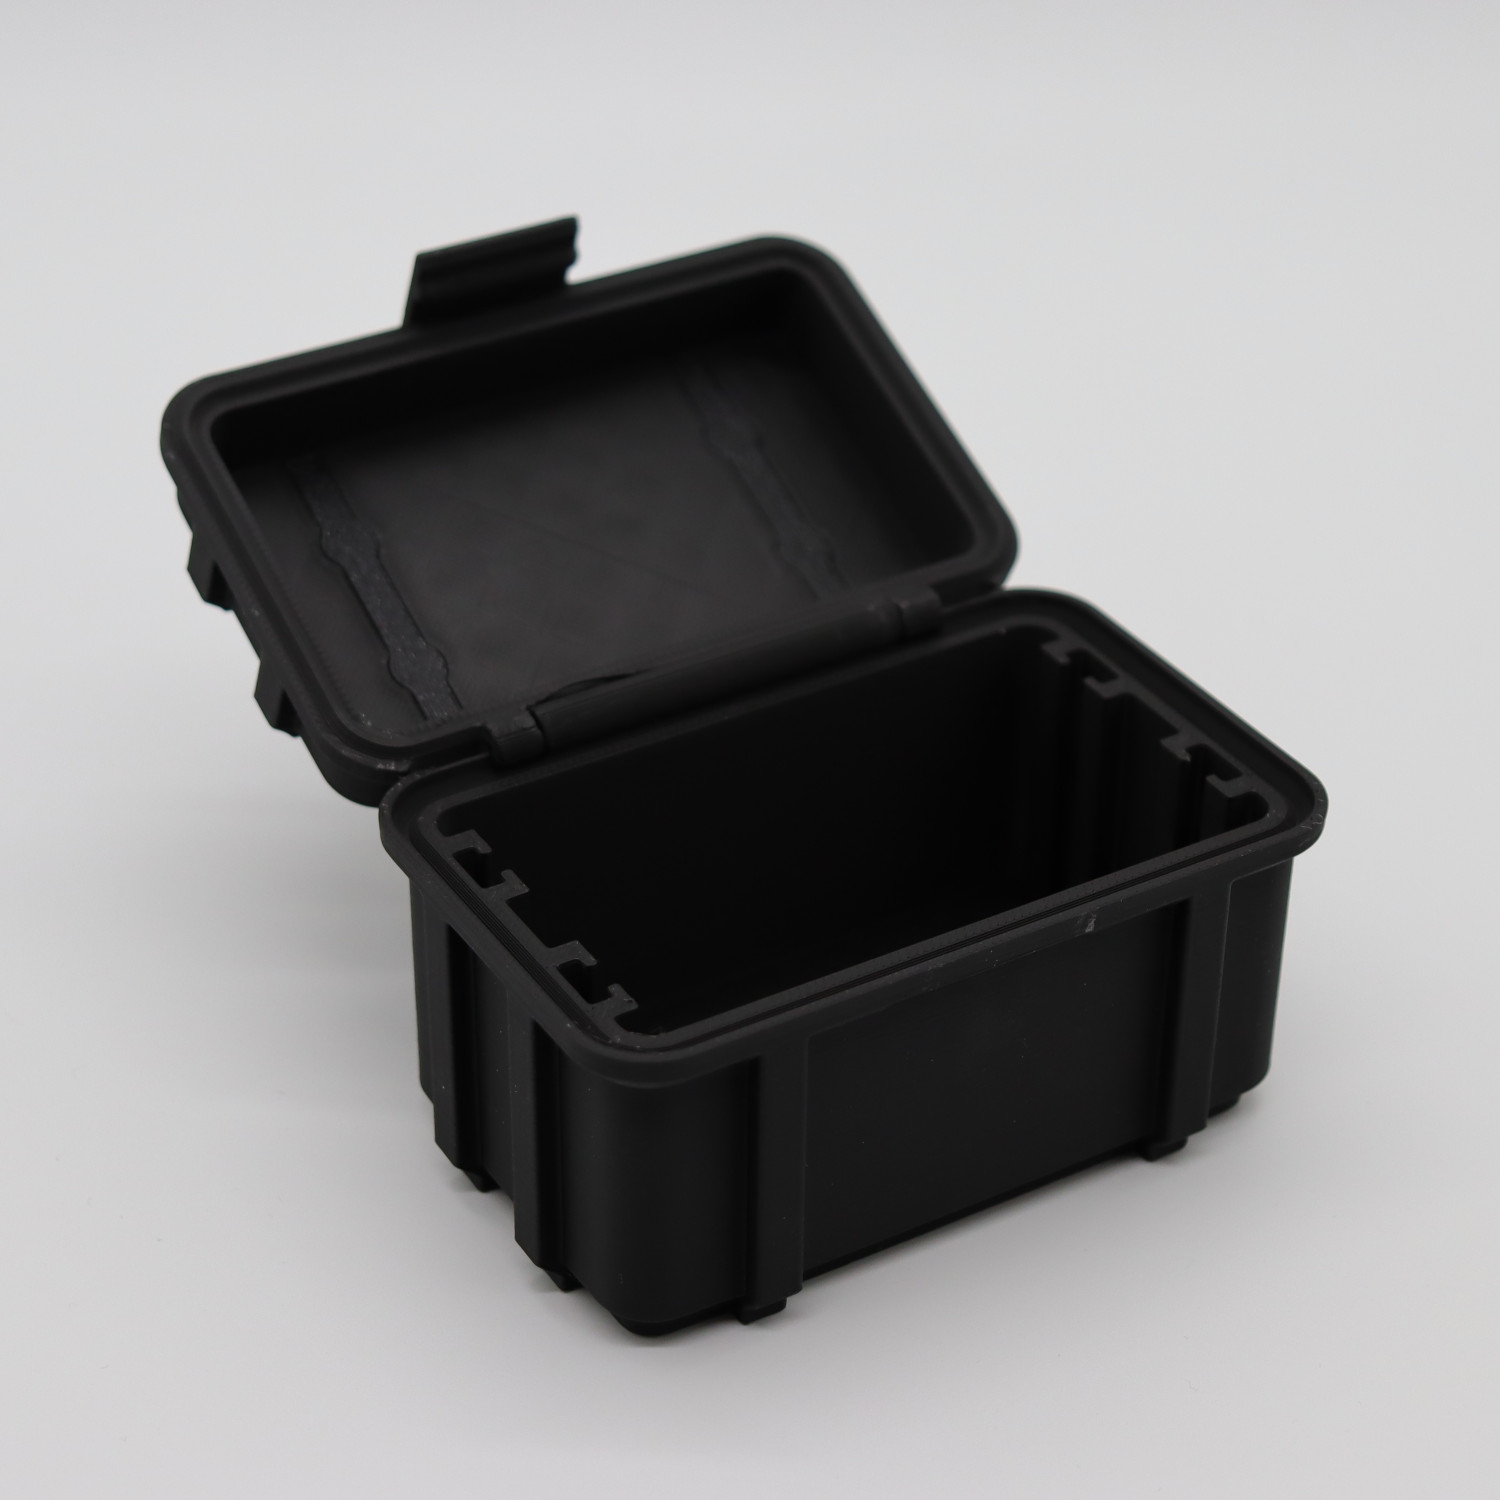 Stapelbarer Mini-Schutzkoffer in Army-Style für Batterien, SD-Karten und mehr